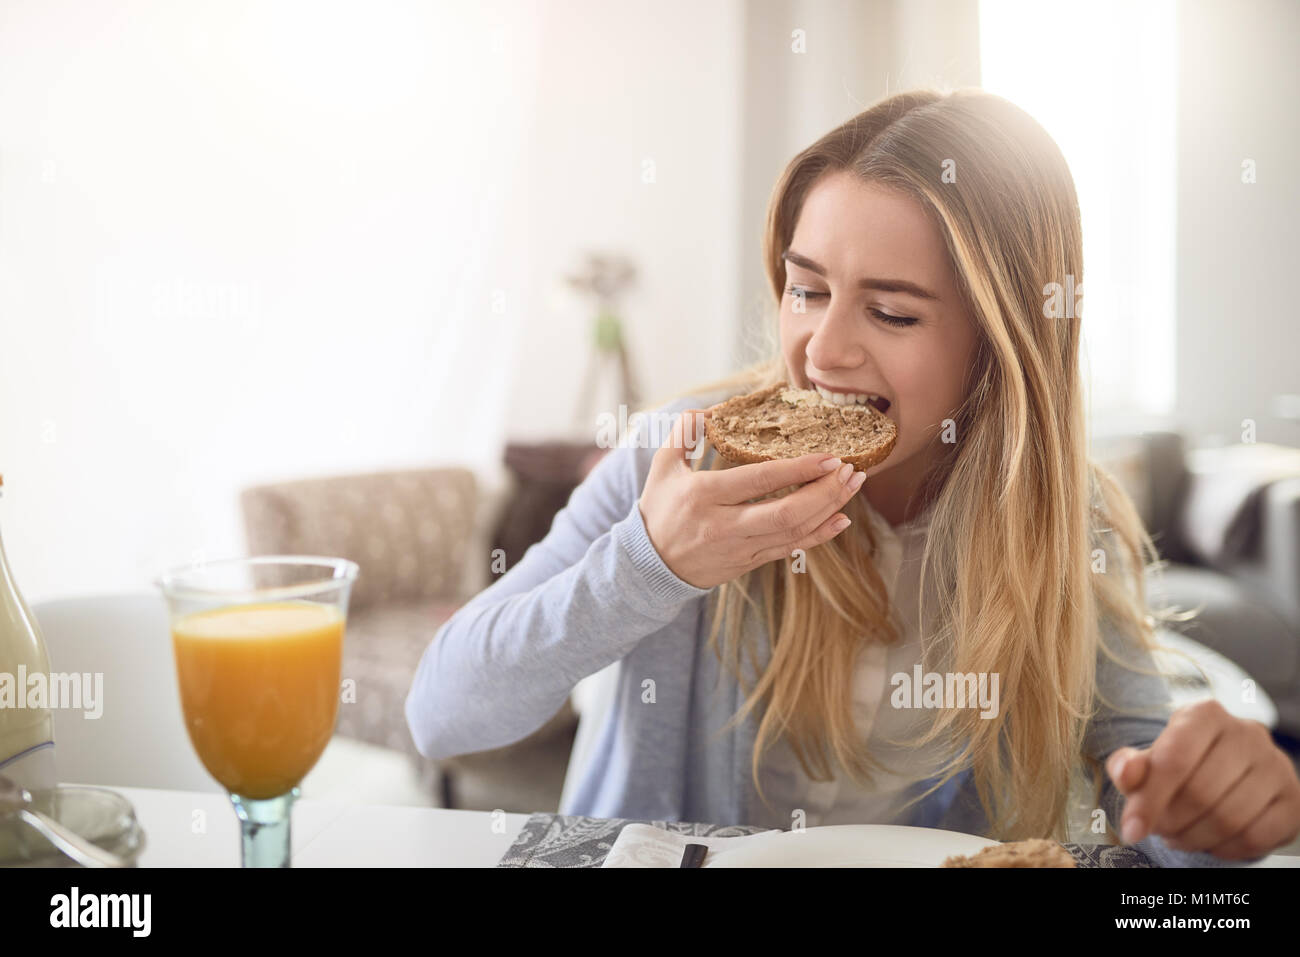 Hübsche junge jugendmädchen einen Bissen von einem gesunden braunen Vollkorn rollen, wie Sie ein gesundes Frühstück zu Hause genießt bei einem Glas frischen Orange juic Stockfoto